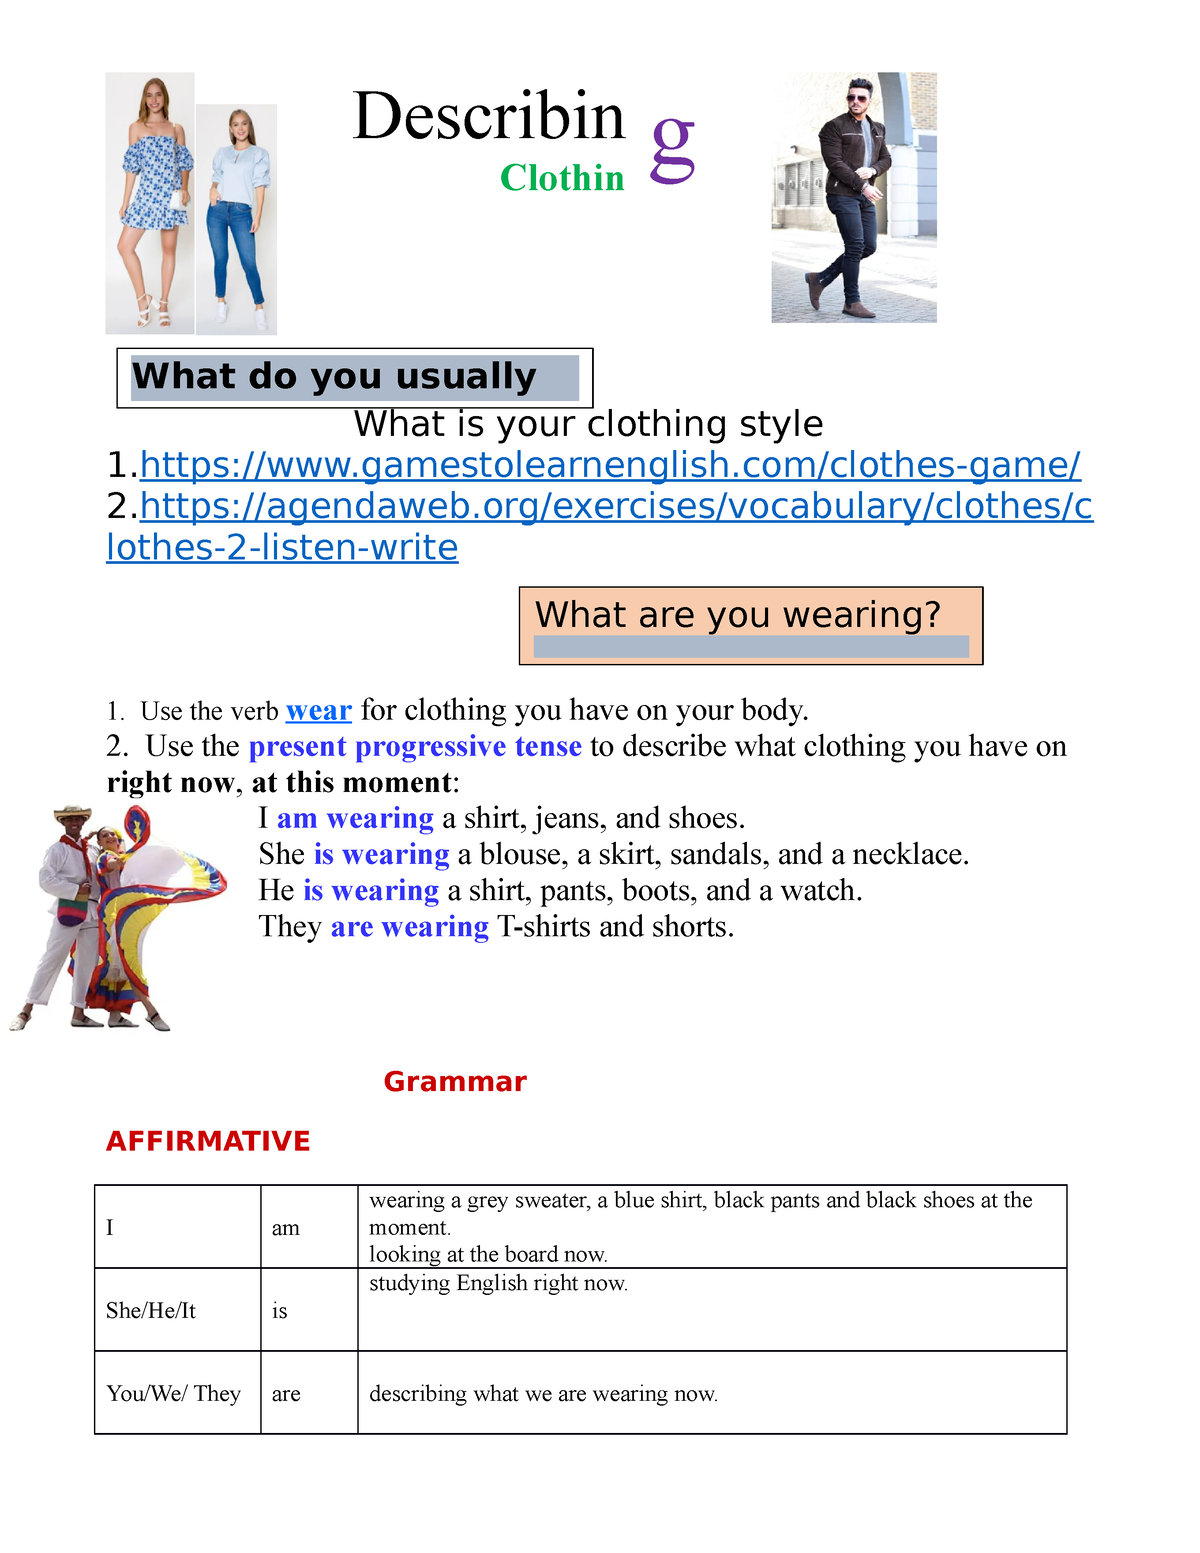 Describing Clothing - Repaso inglés - Describin g Clothin What is